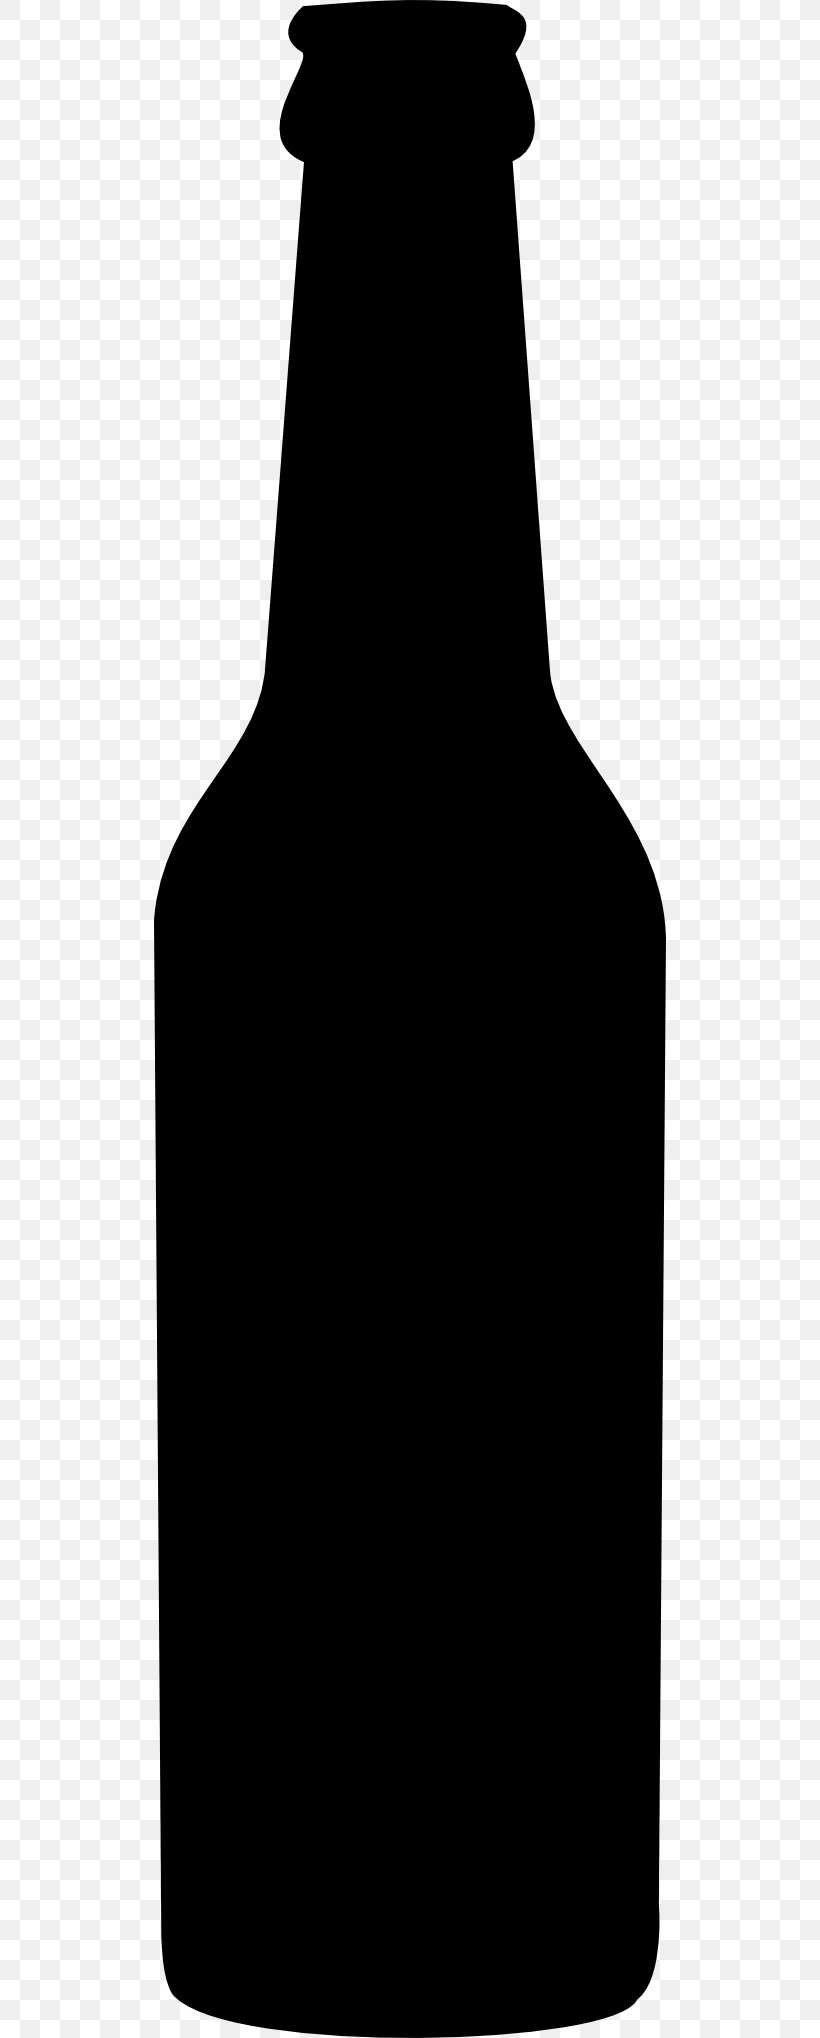 Beer Wine India Pale Ale Founders Brewing Company Fizzy Drinks, PNG, 512x2038px, Beer, Beer Bottle, Beer Brewing Grains Malts, Beer Glasses, Beer Stein Download Free